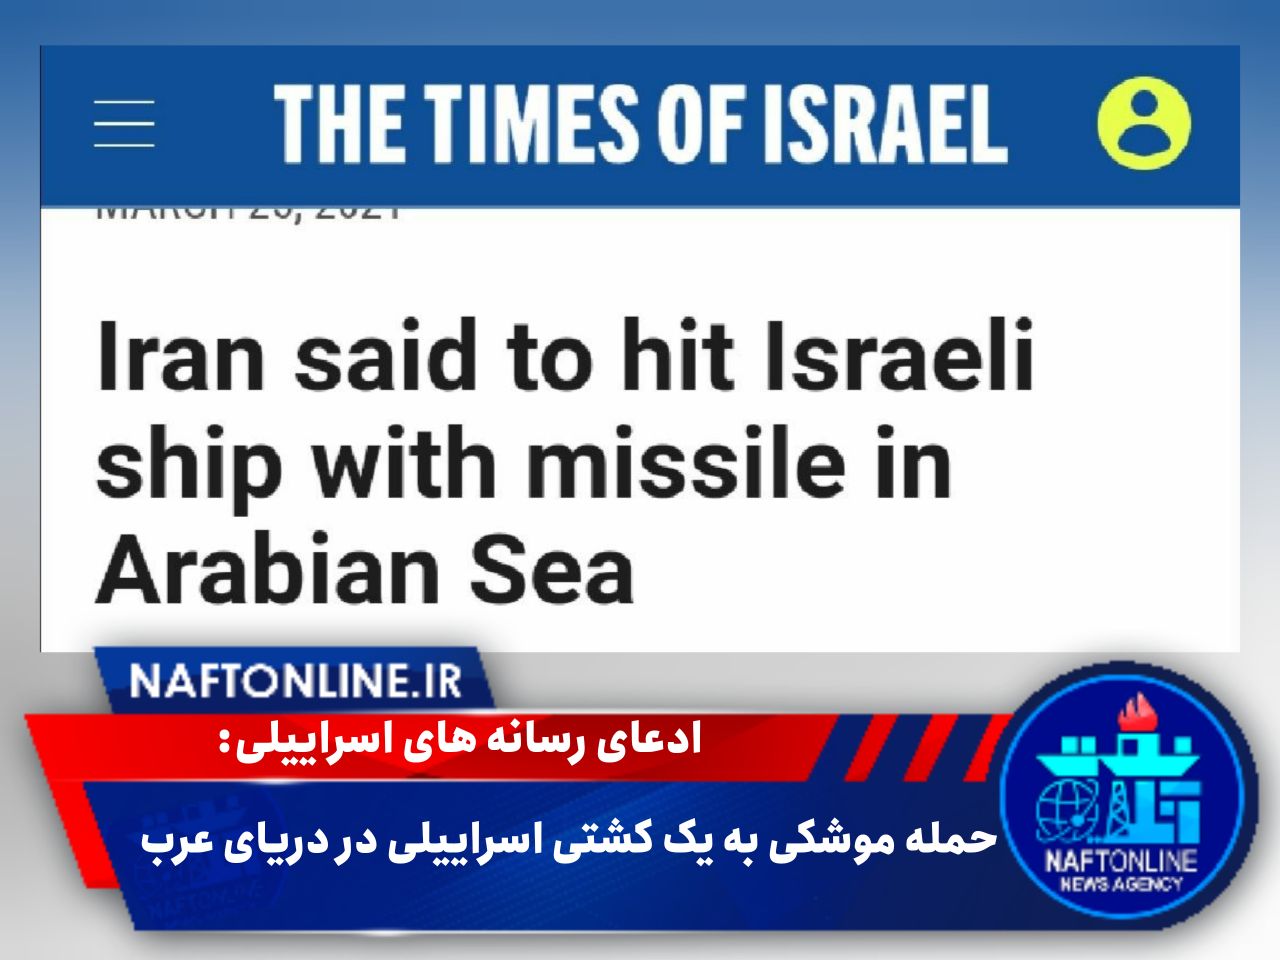 تصویر خبر هدف قرار دادن یک کشتی اسراییلی در دریای عرب توسط تایمز | نفت آنلاین